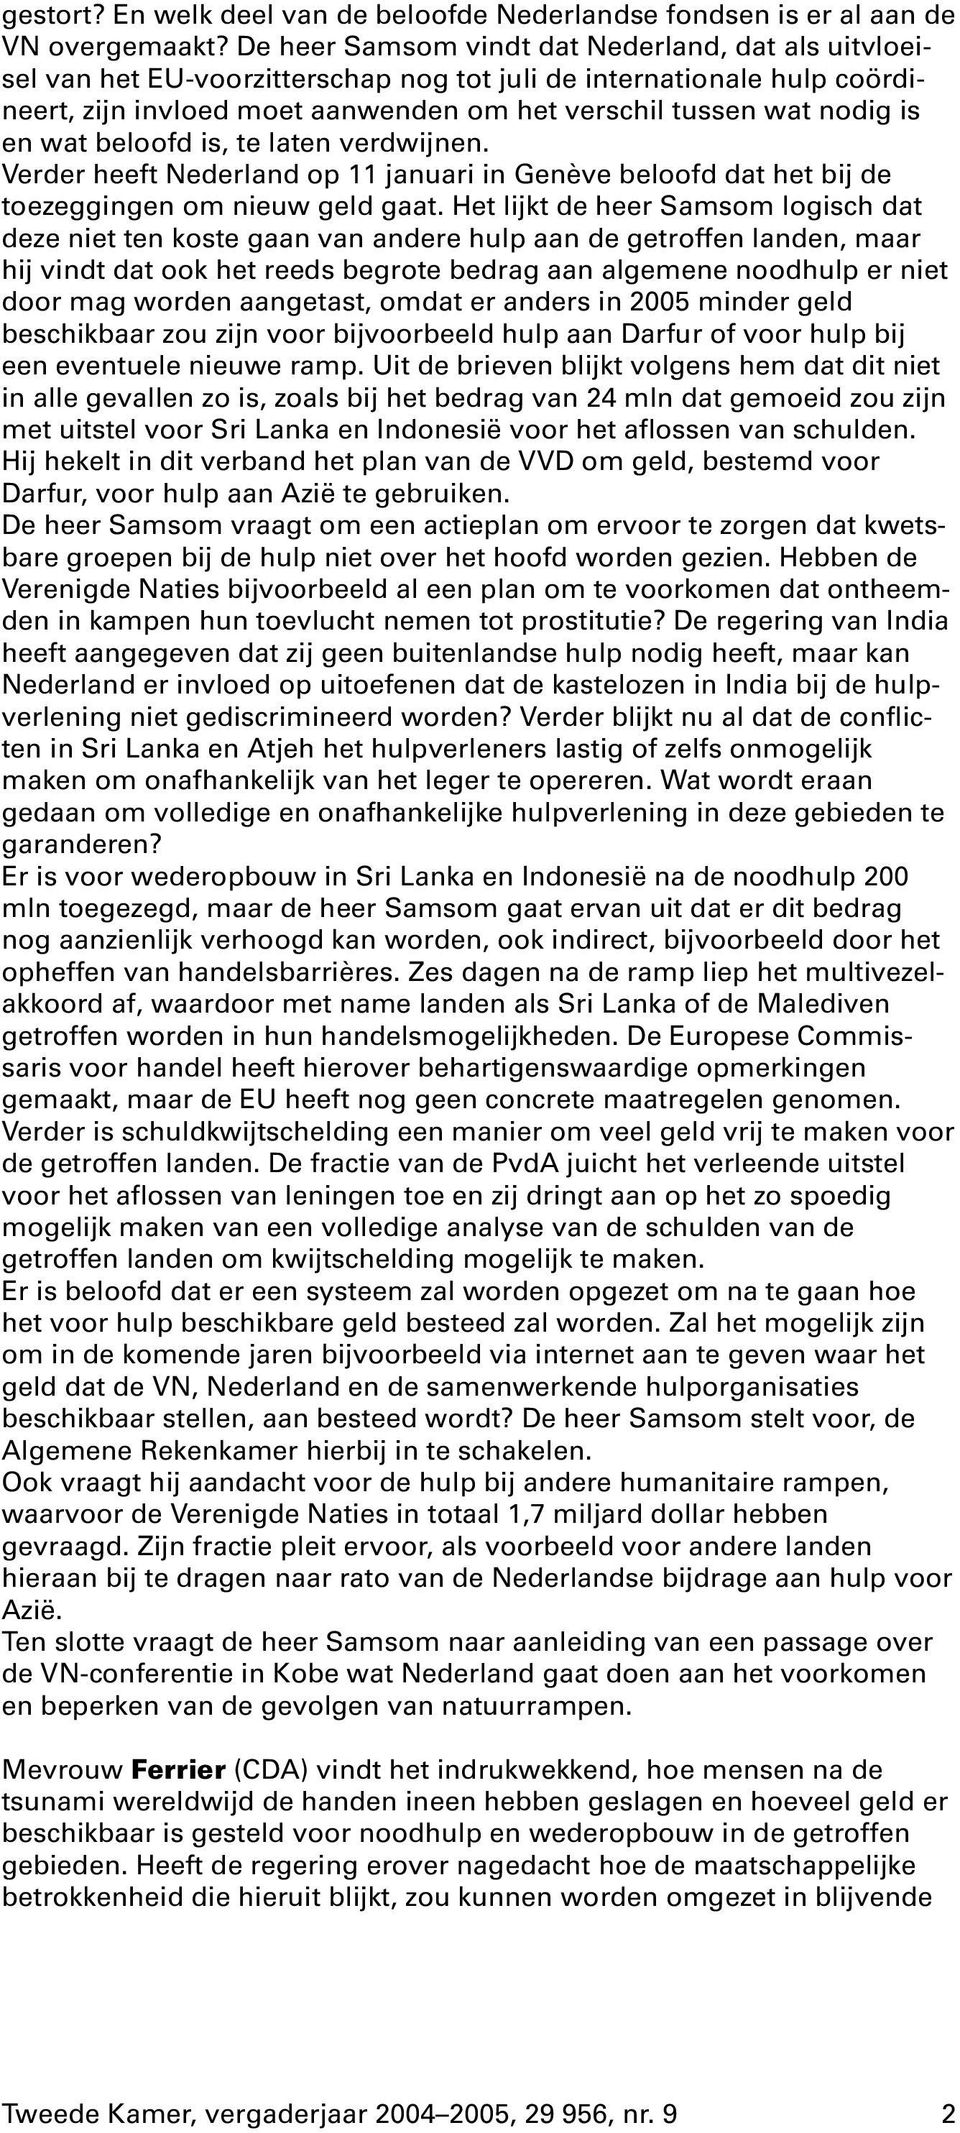 wat beloofd is, te laten verdwijnen. Verder heeft Nederland op 11 januari in Genève beloofd dat het bij de toezeggingen om nieuw geld gaat.